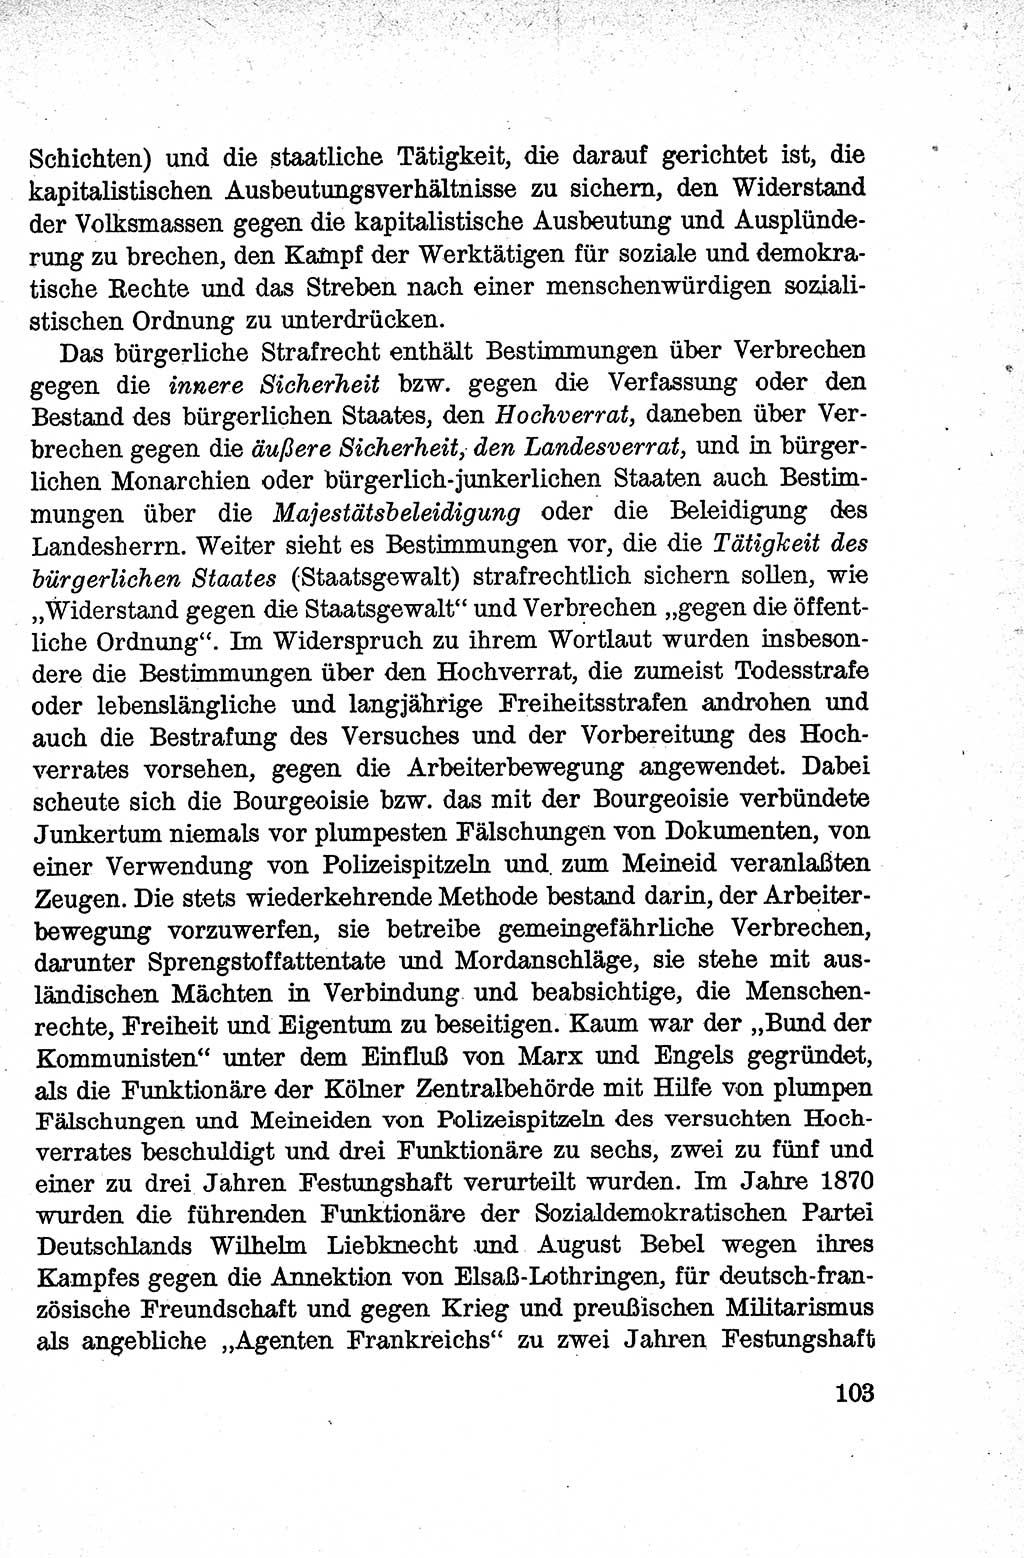 Lehrbuch des Strafrechts der Deutschen Demokratischen Republik (DDR), Allgemeiner Teil 1959, Seite 103 (Lb. Strafr. DDR AT 1959, S. 103)